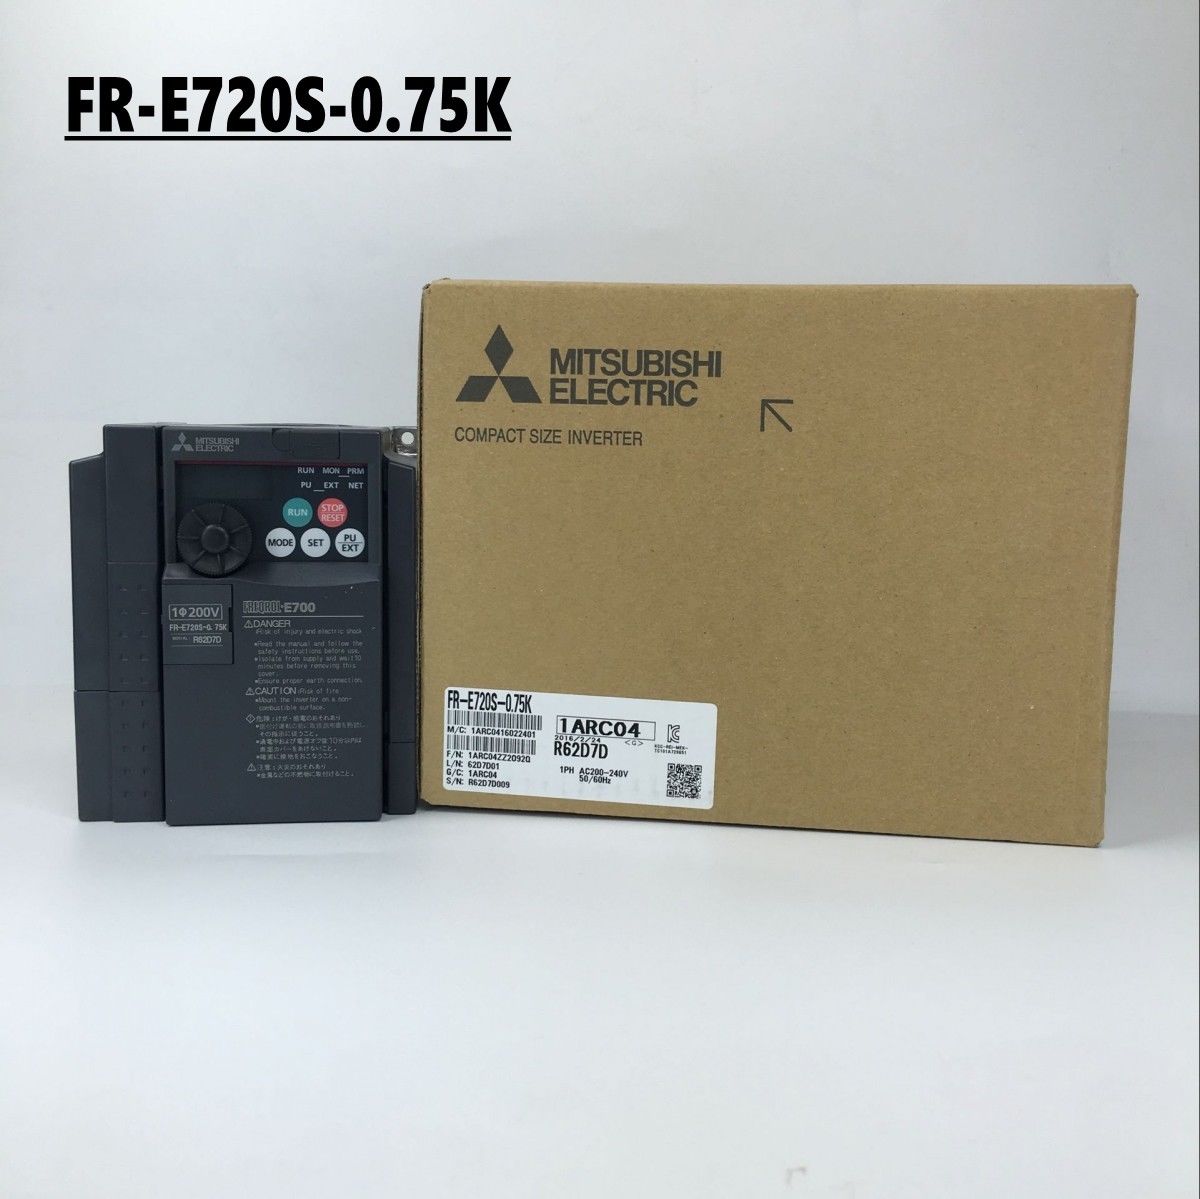 New MITSUBISHI FR-E700 SERIES inverter FR-E720S-0.75K 750W